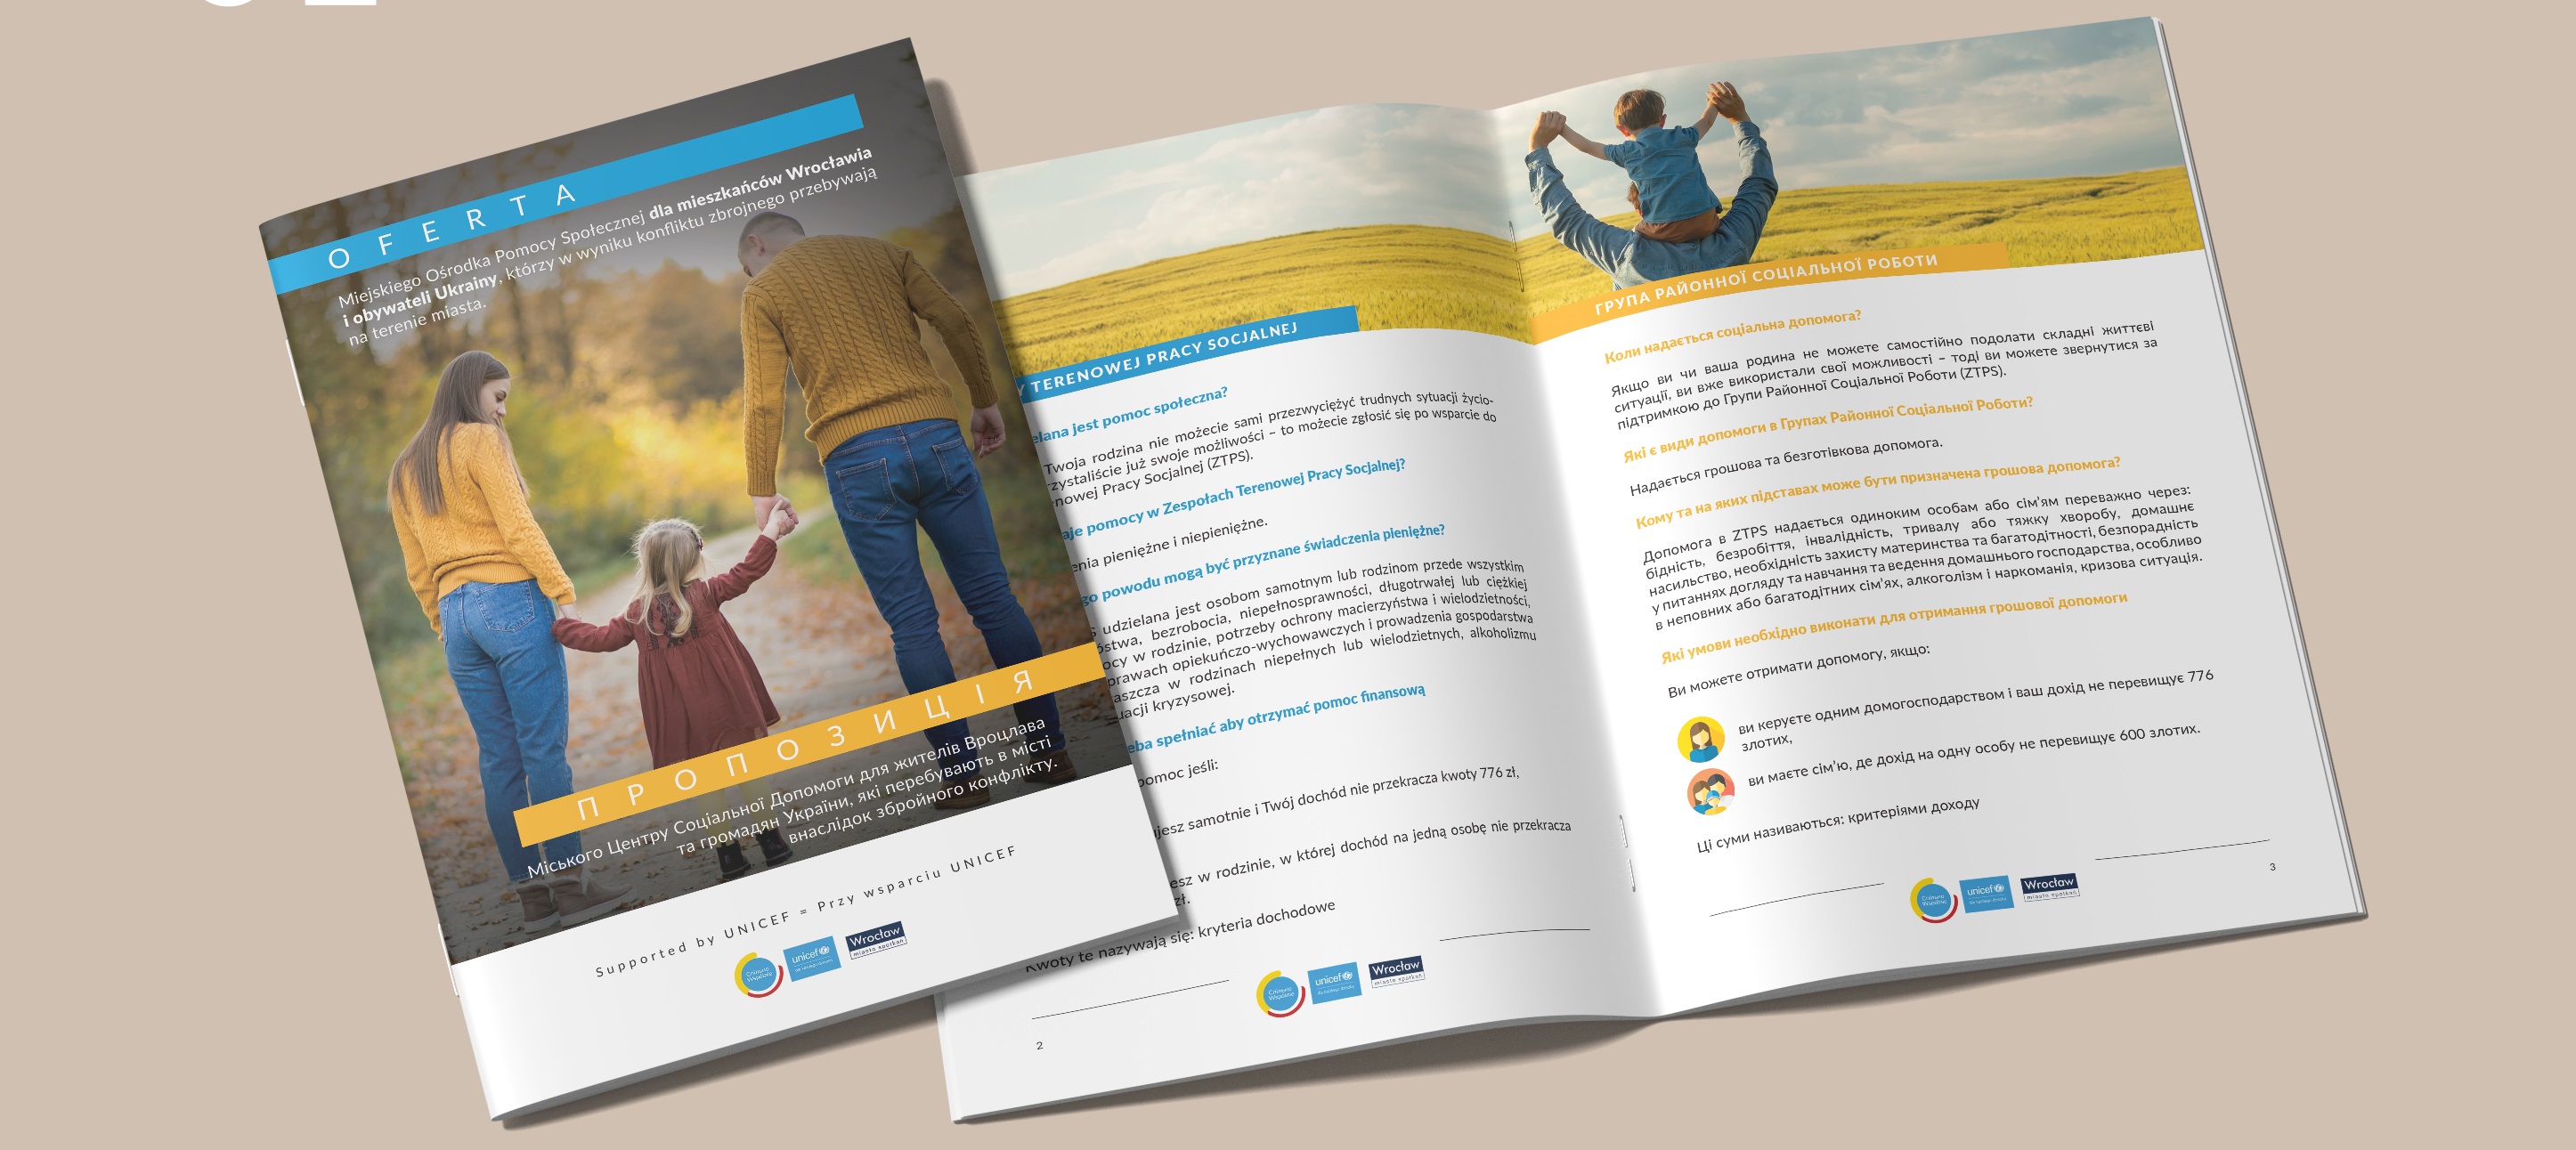 broszura informacyjna, która przedstawia ofertę MOPS przybyszom z Ukrainy